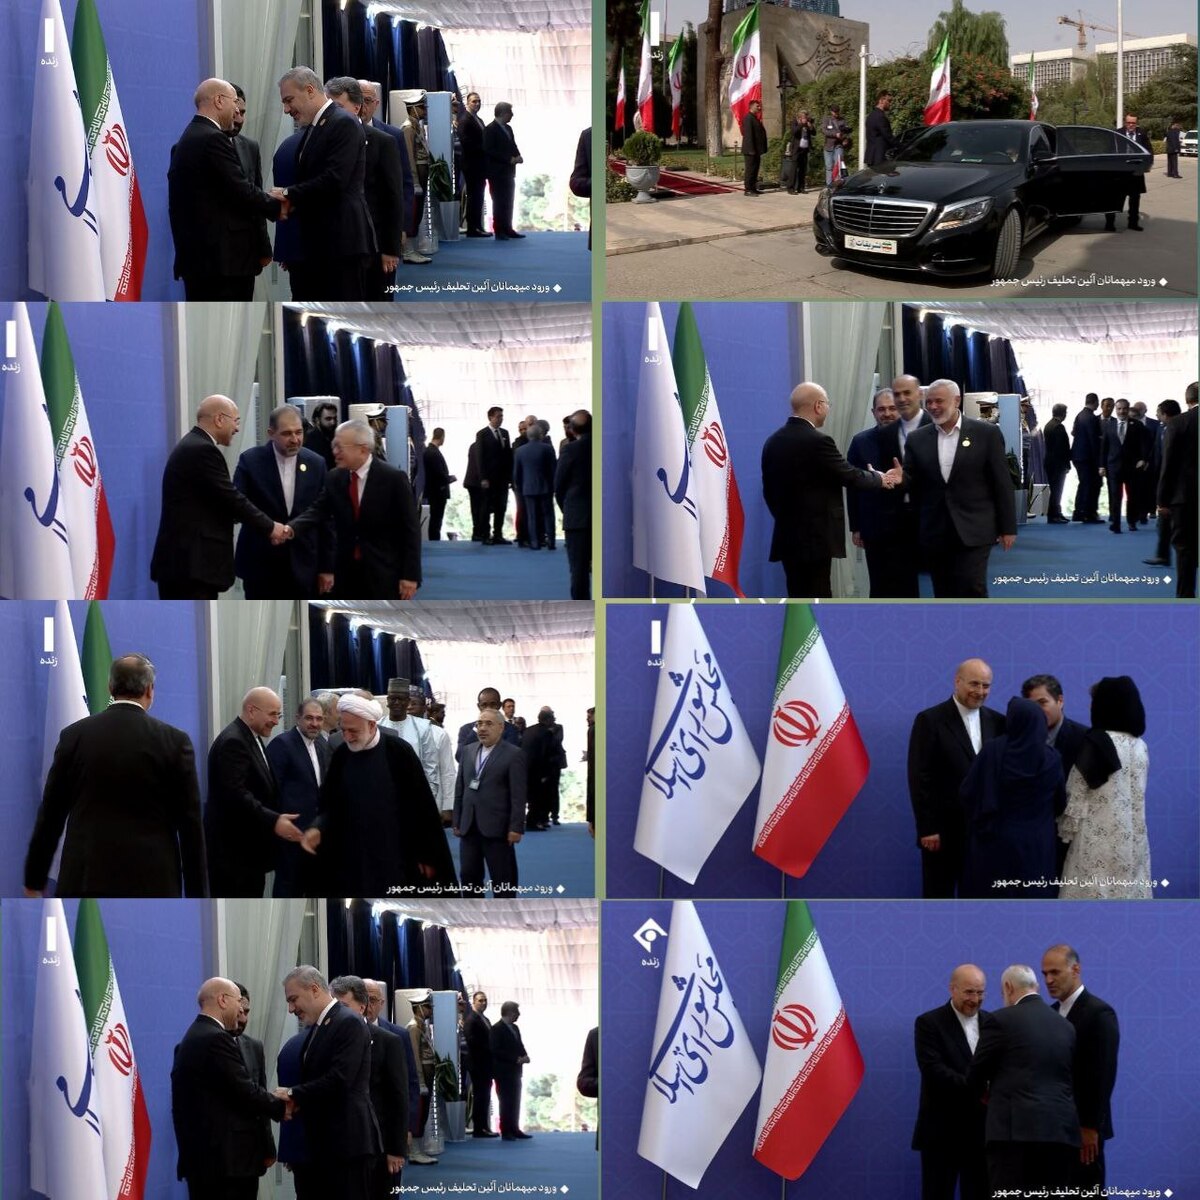 فیلم و عکس  ورود مقامات و مسئولان کشورهای خارجی در مجلس شورای اسلامی